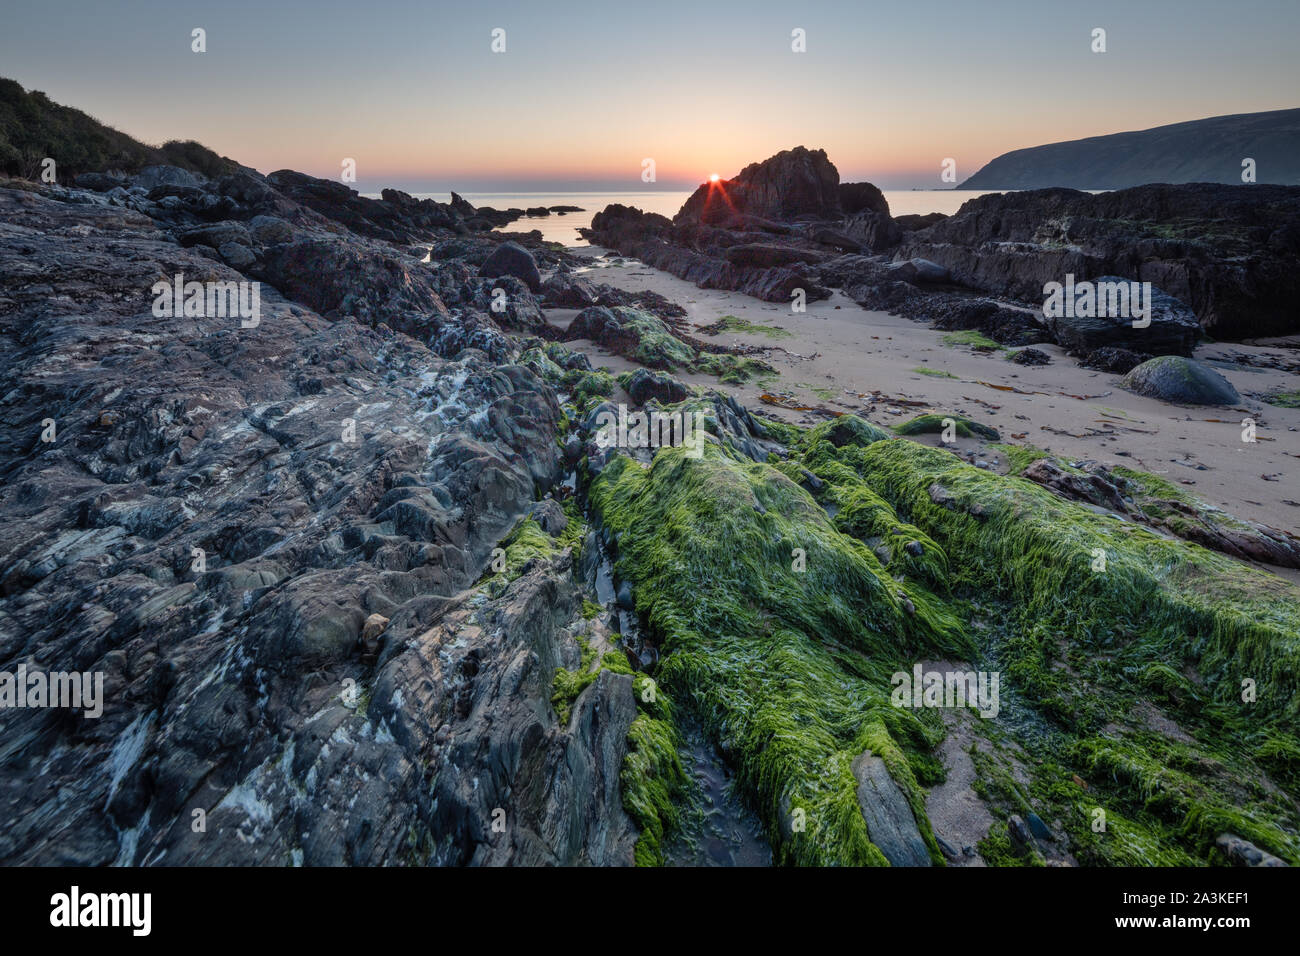 Piedras incrustadas con algas y líquenes en la playa en la Bahía de Kinnagoe al amanecer, península Inishowen, Co Donegal, Irlanda Foto de stock